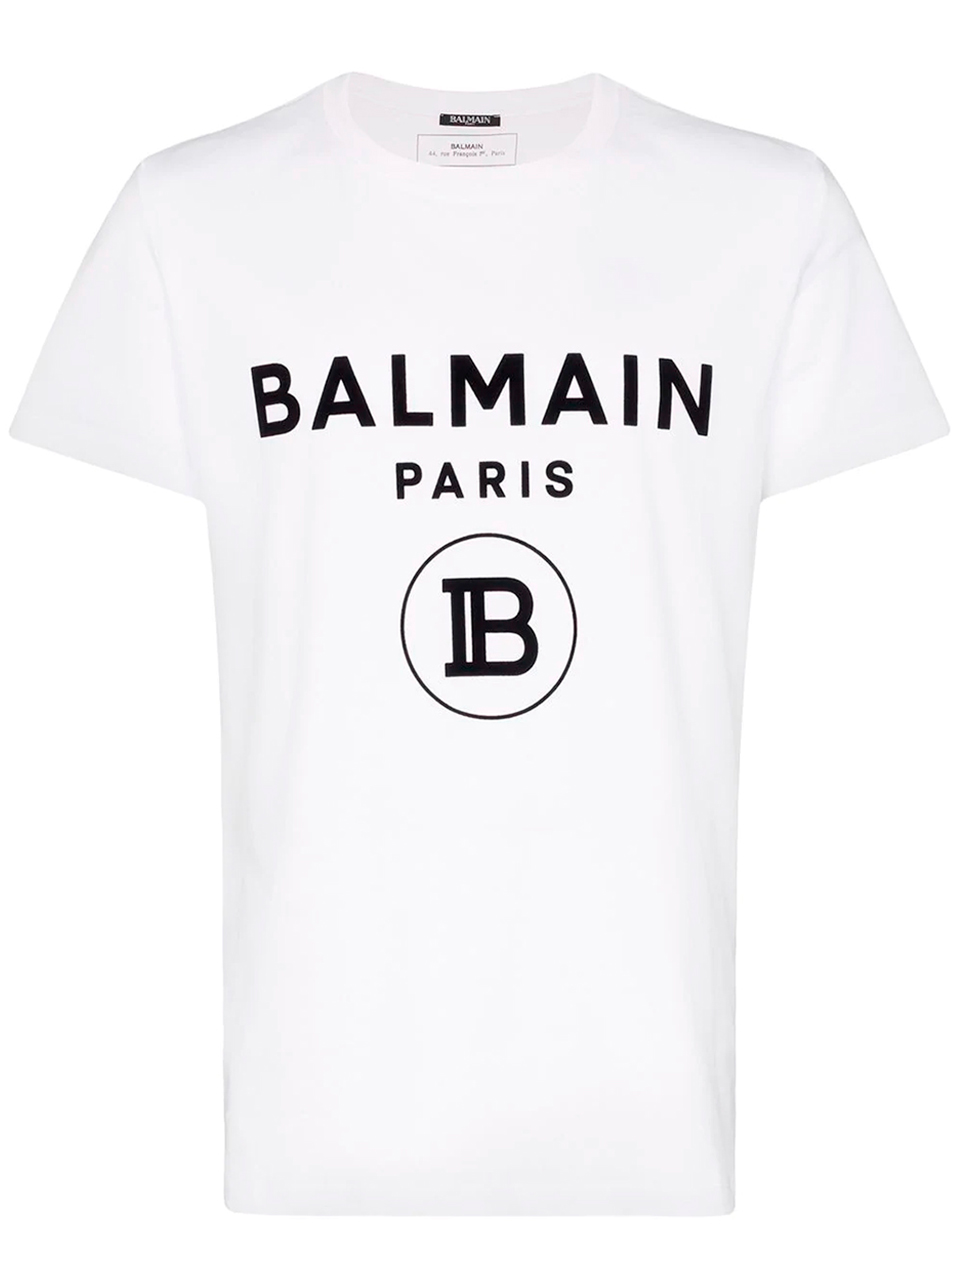 Imagem de: Camiseta Balmain Paris Branca com Estampa Preta